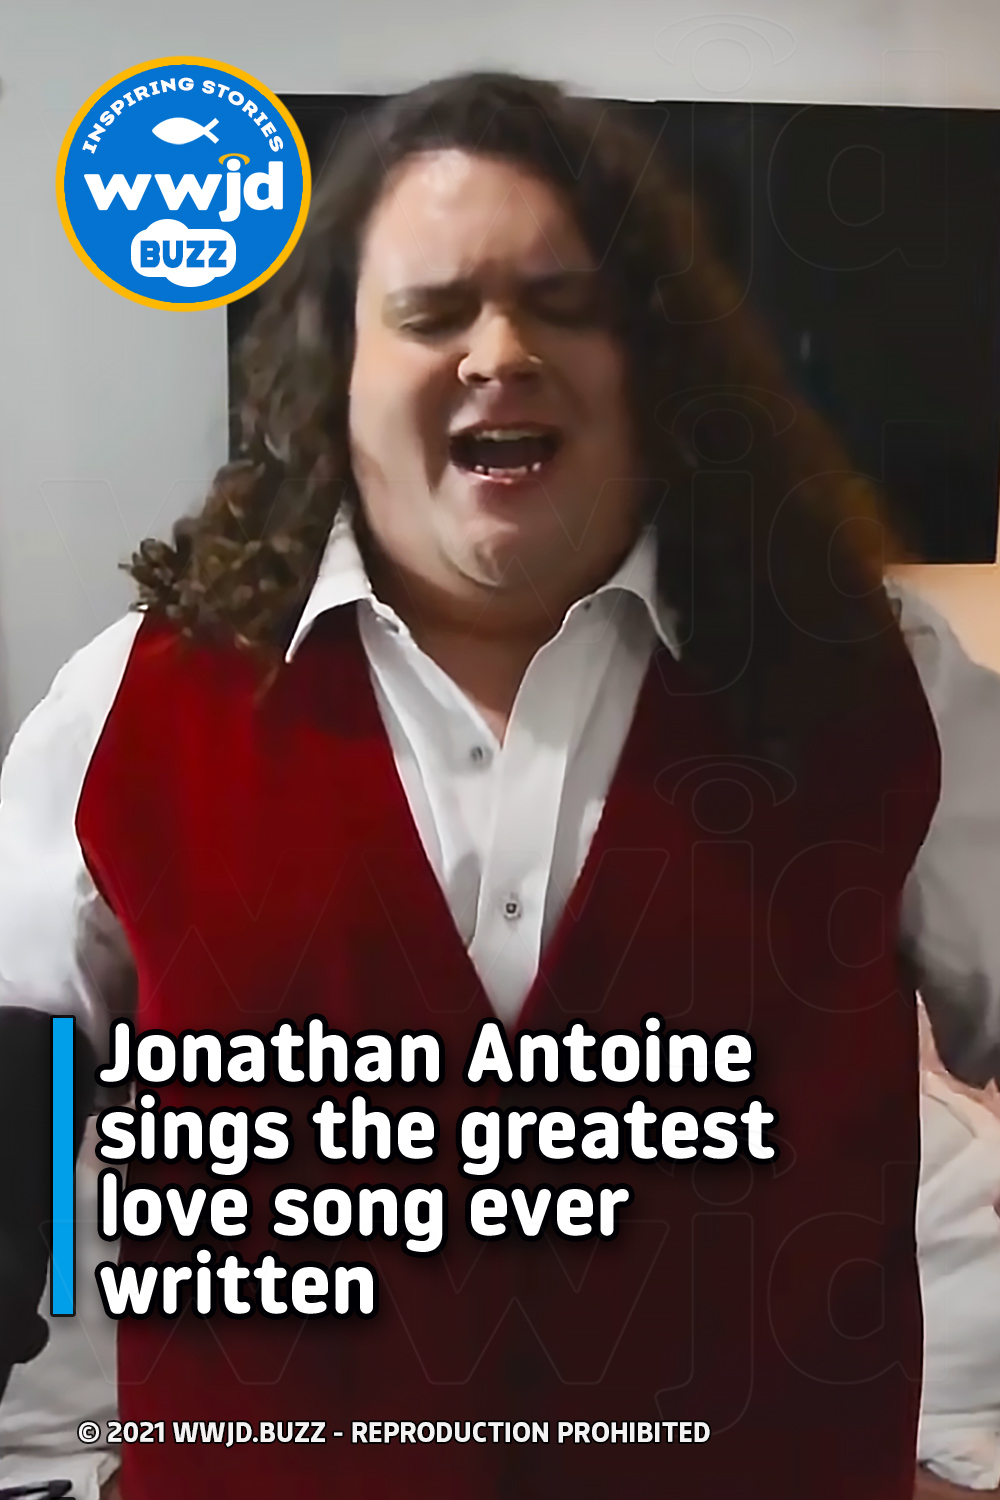 Jonathan Antoine sings the greatest love song ever written